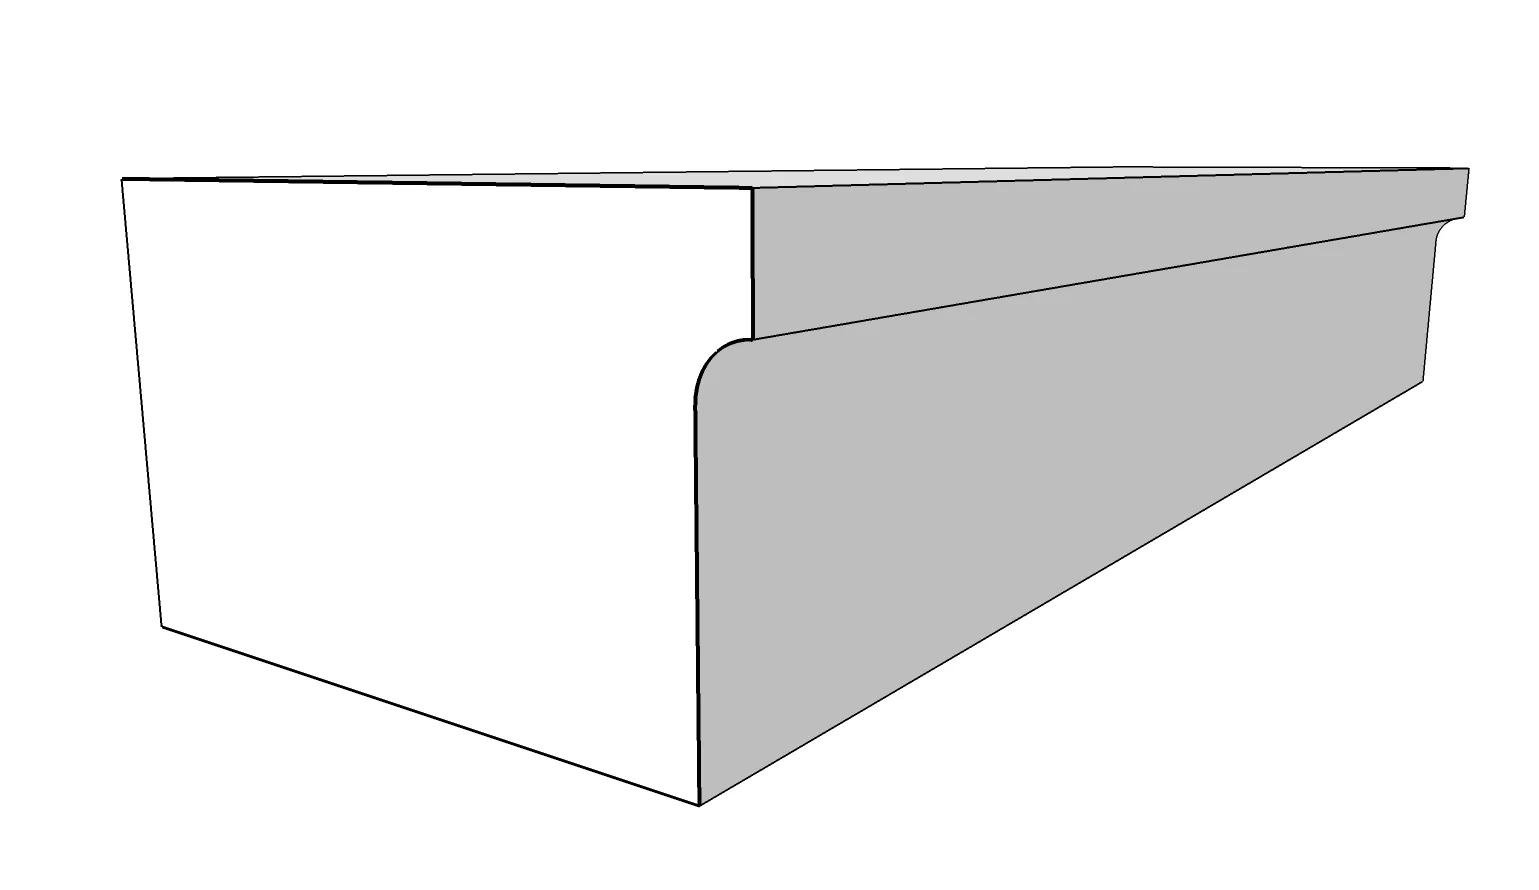 Sandstein Blockstufe B3 mit Hohlkehle, Zeichnung KORI Handel